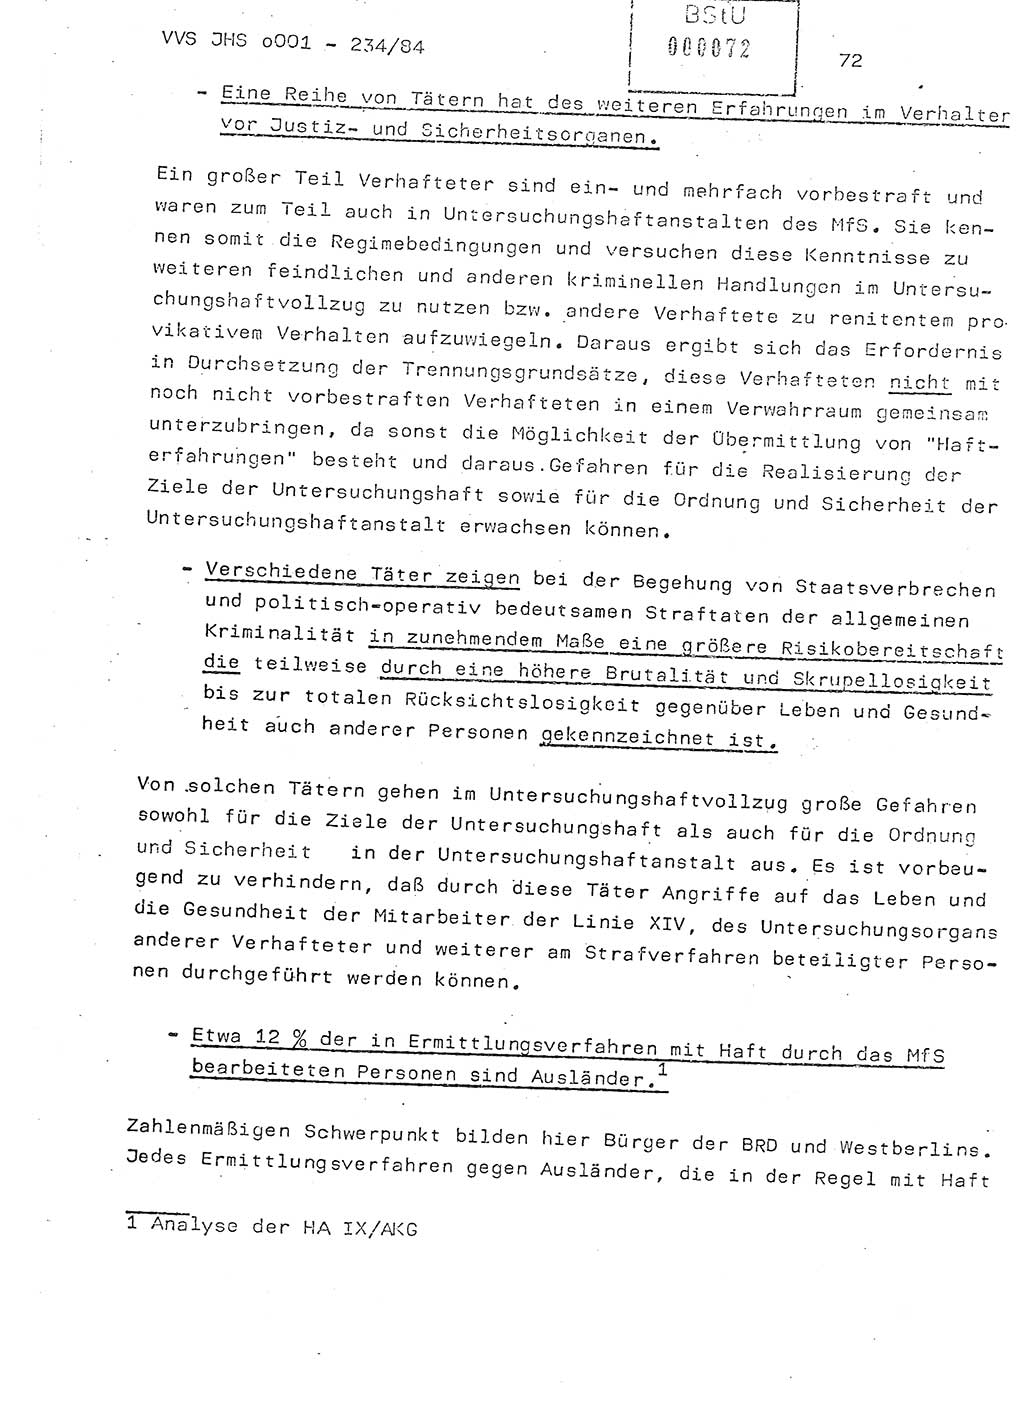 Dissertation Oberst Siegfried Rataizick (Abt. ⅩⅣ), Oberstleutnant Volkmar Heinz (Abt. ⅩⅣ), Oberstleutnant Werner Stein (HA Ⅸ), Hauptmann Heinz Conrad (JHS), Ministerium für Staatssicherheit (MfS) [Deutsche Demokratische Republik (DDR)], Juristische Hochschule (JHS), Vertrauliche Verschlußsache (VVS) o001-234/84, Potsdam 1984, Seite 72 (Diss. MfS DDR JHS VVS o001-234/84 1984, S. 72)